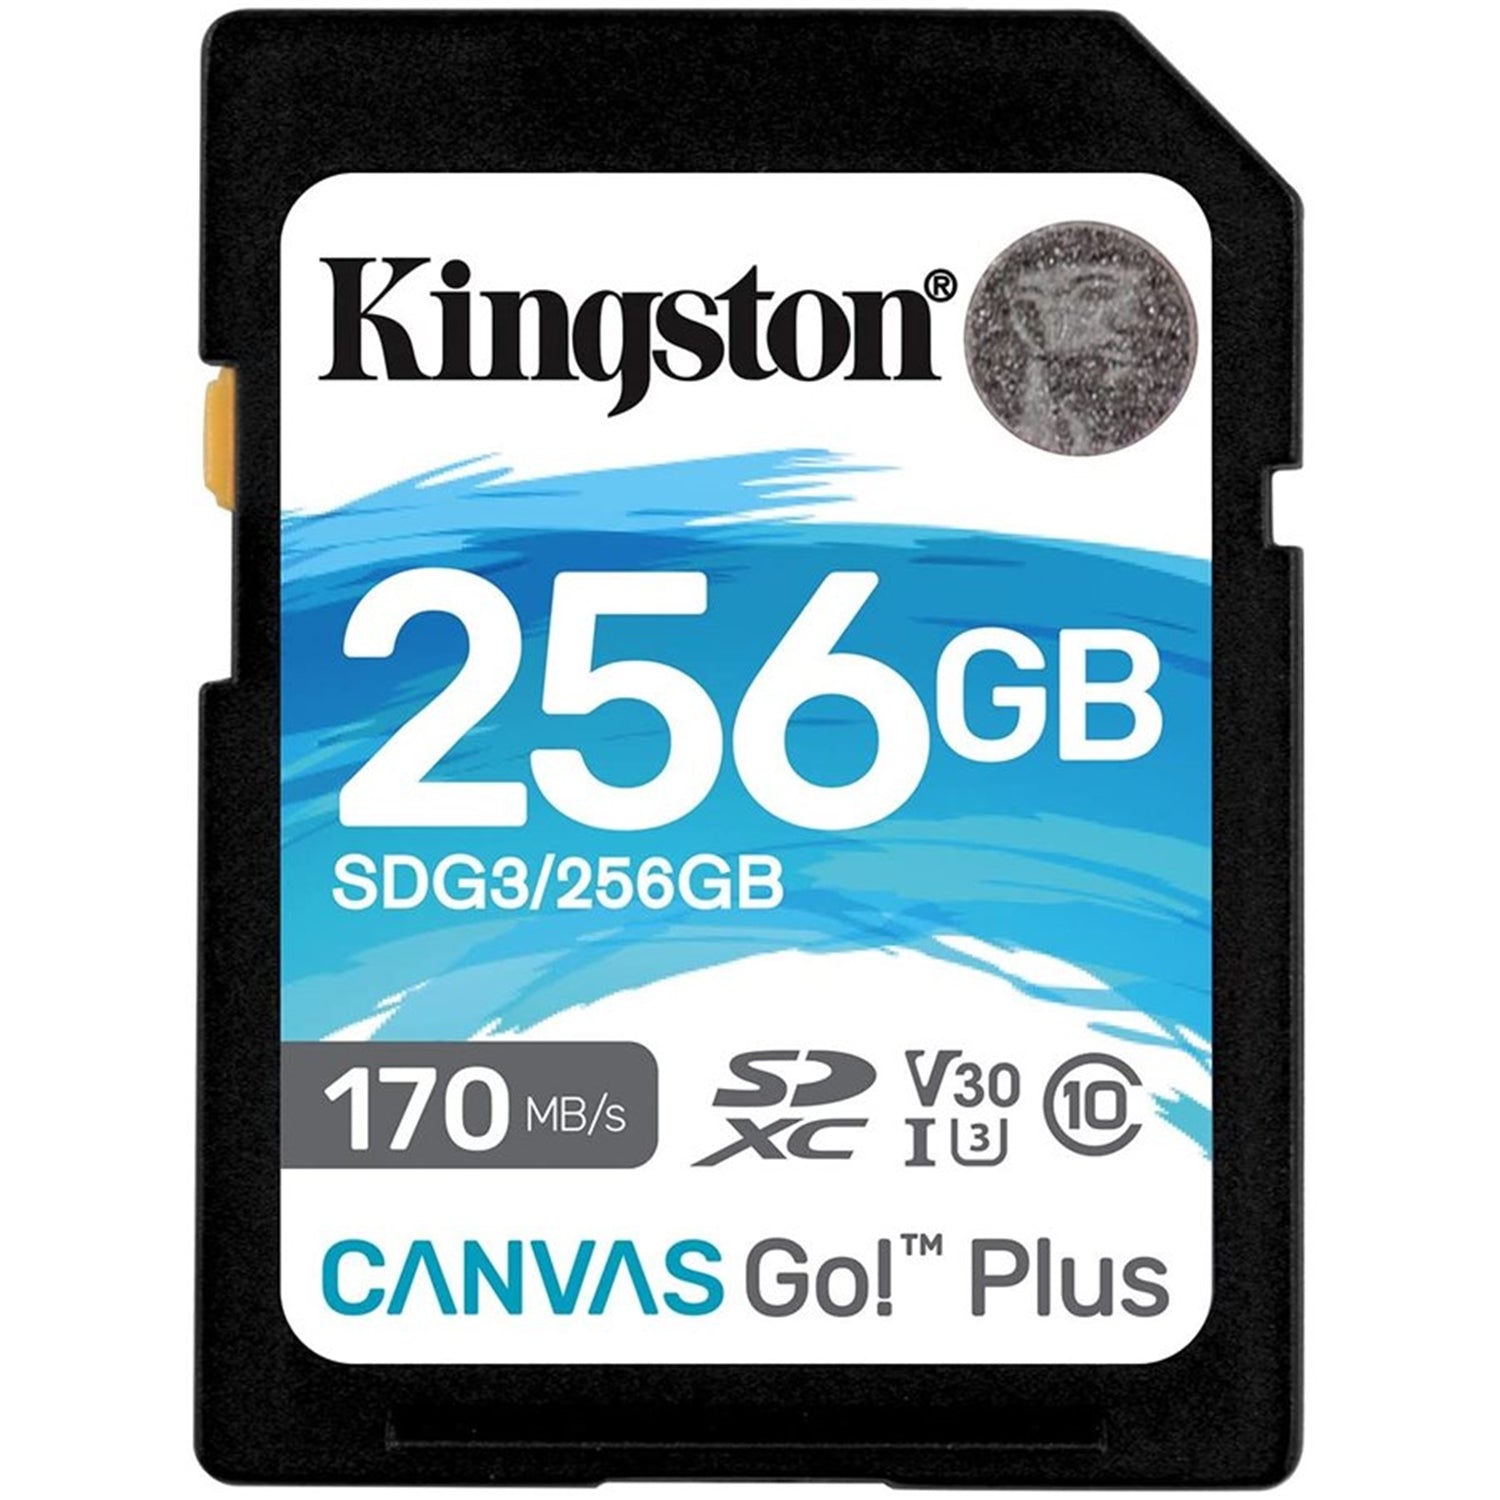 Kingston - Carte Mémoire SD Plus Canvas Go, Capacité de 256GB, Classe 10, UHS-I, U3, V30